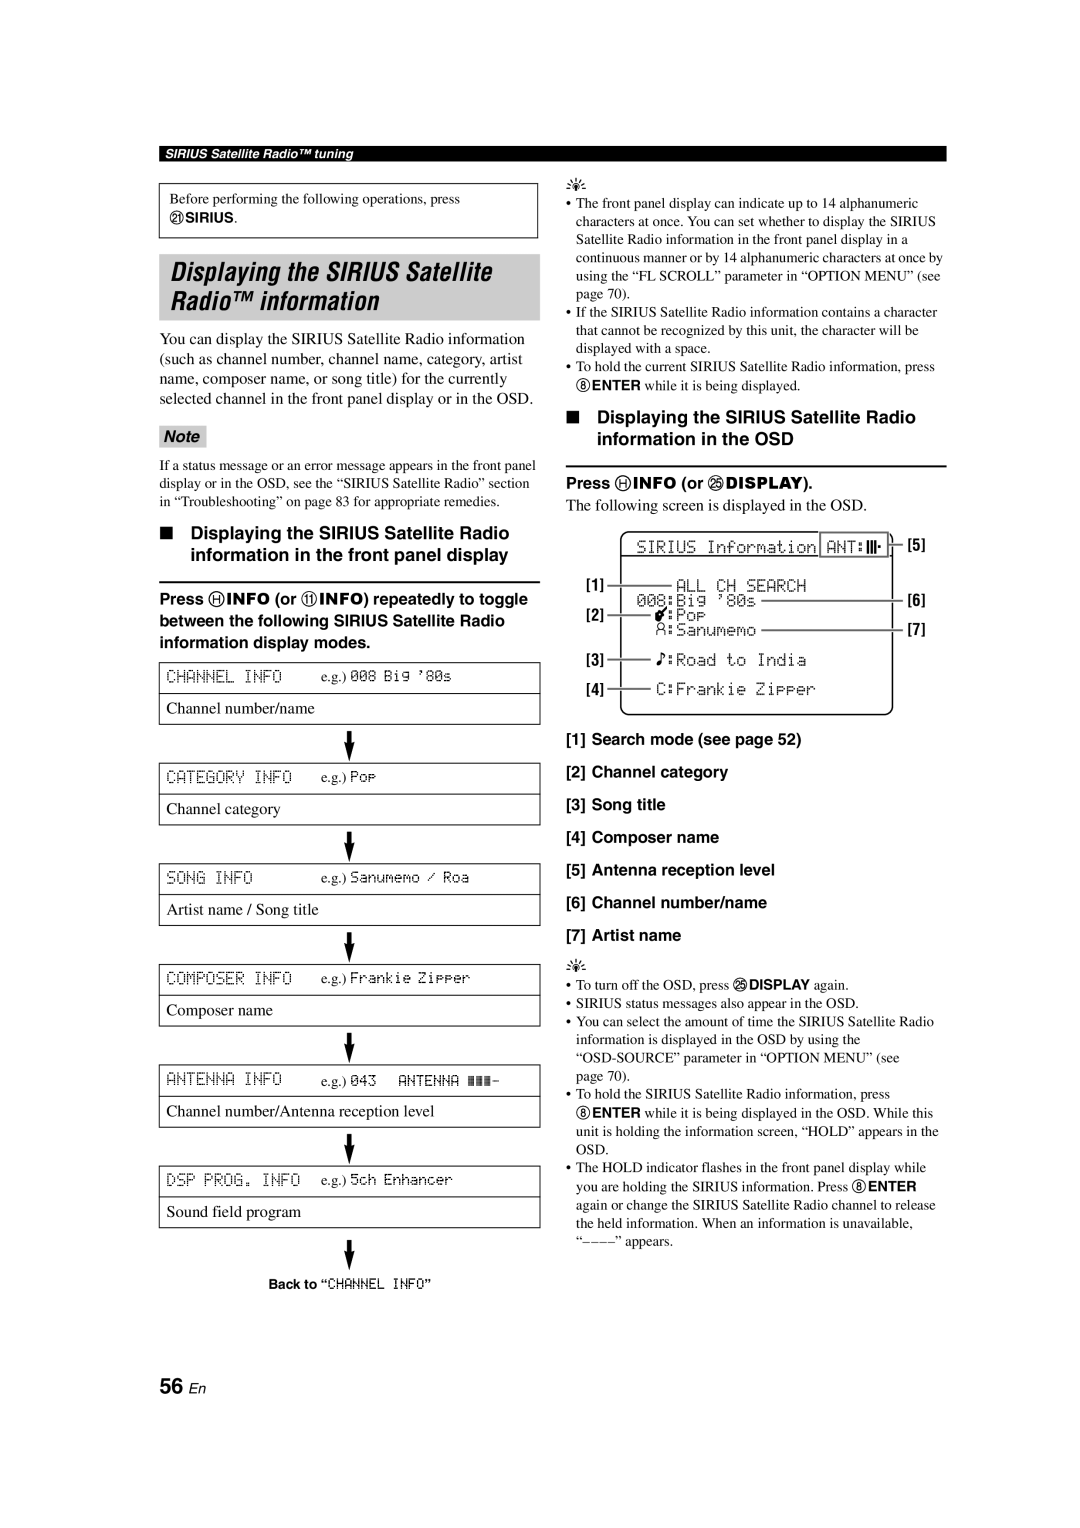 Yamaha RX-V463 owner manual Displaying the SIRIUS Satellite Radio information, 56 En 